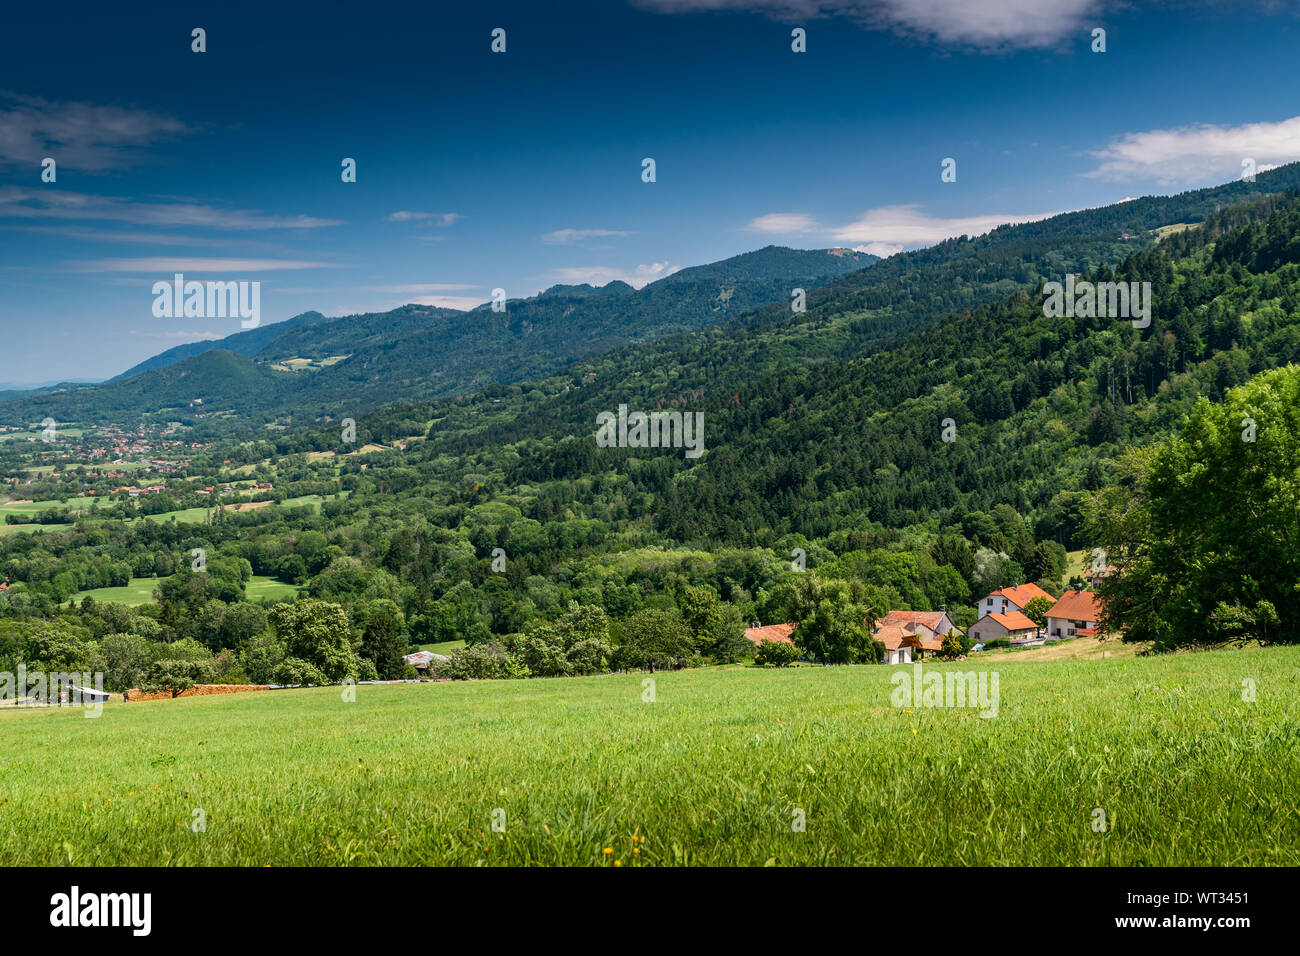 Montaña paisaje de colinas cubiertas de bosques y casas de campo con el cielo azul,focus area en casas de campo.Alta Saboya en Francia. Foto de stock